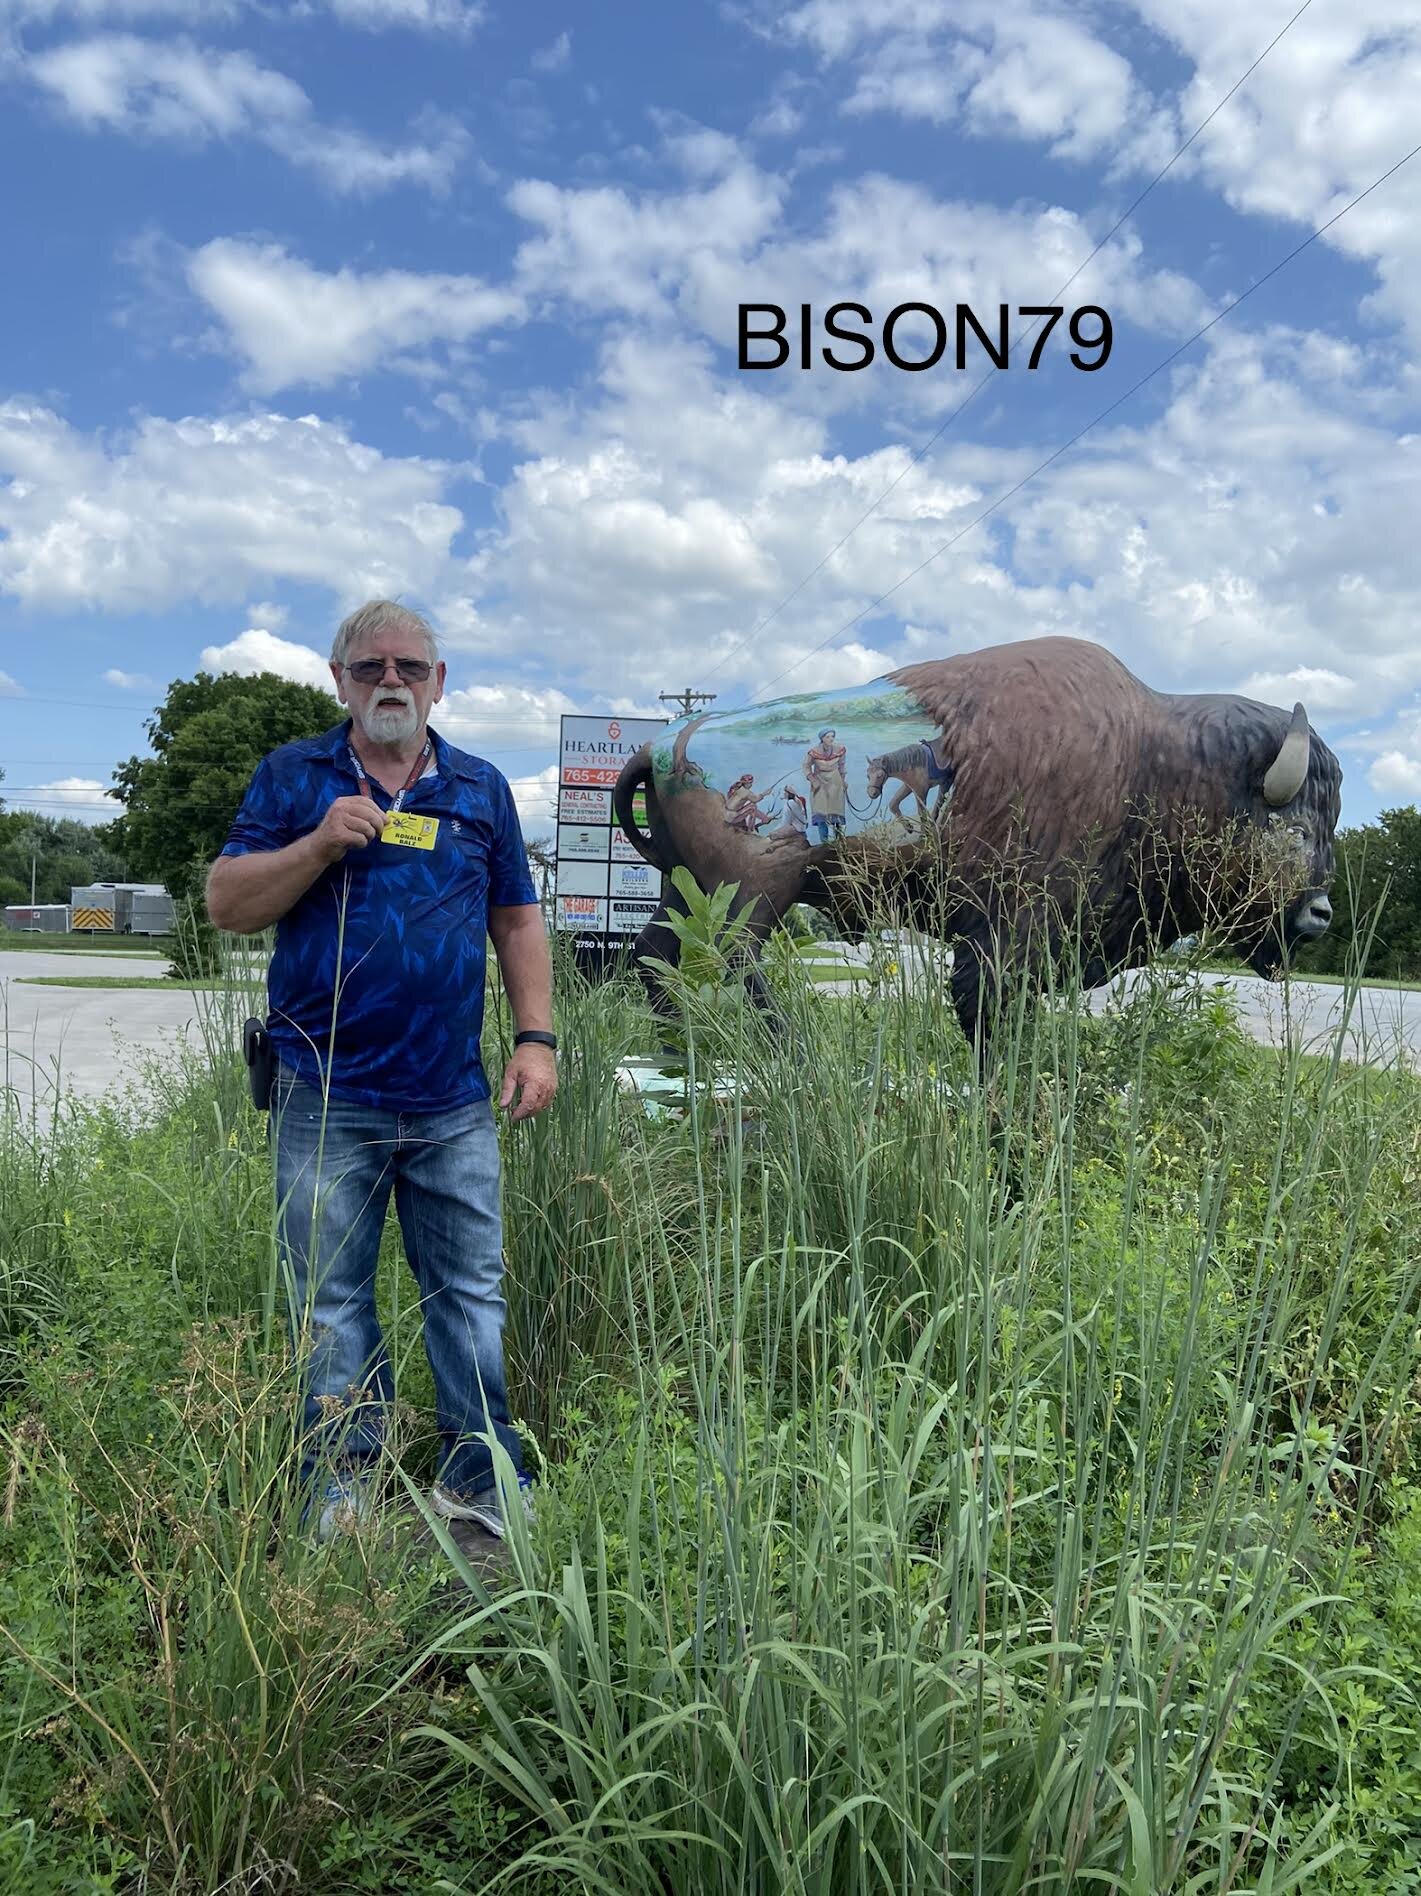 bison79.jpg